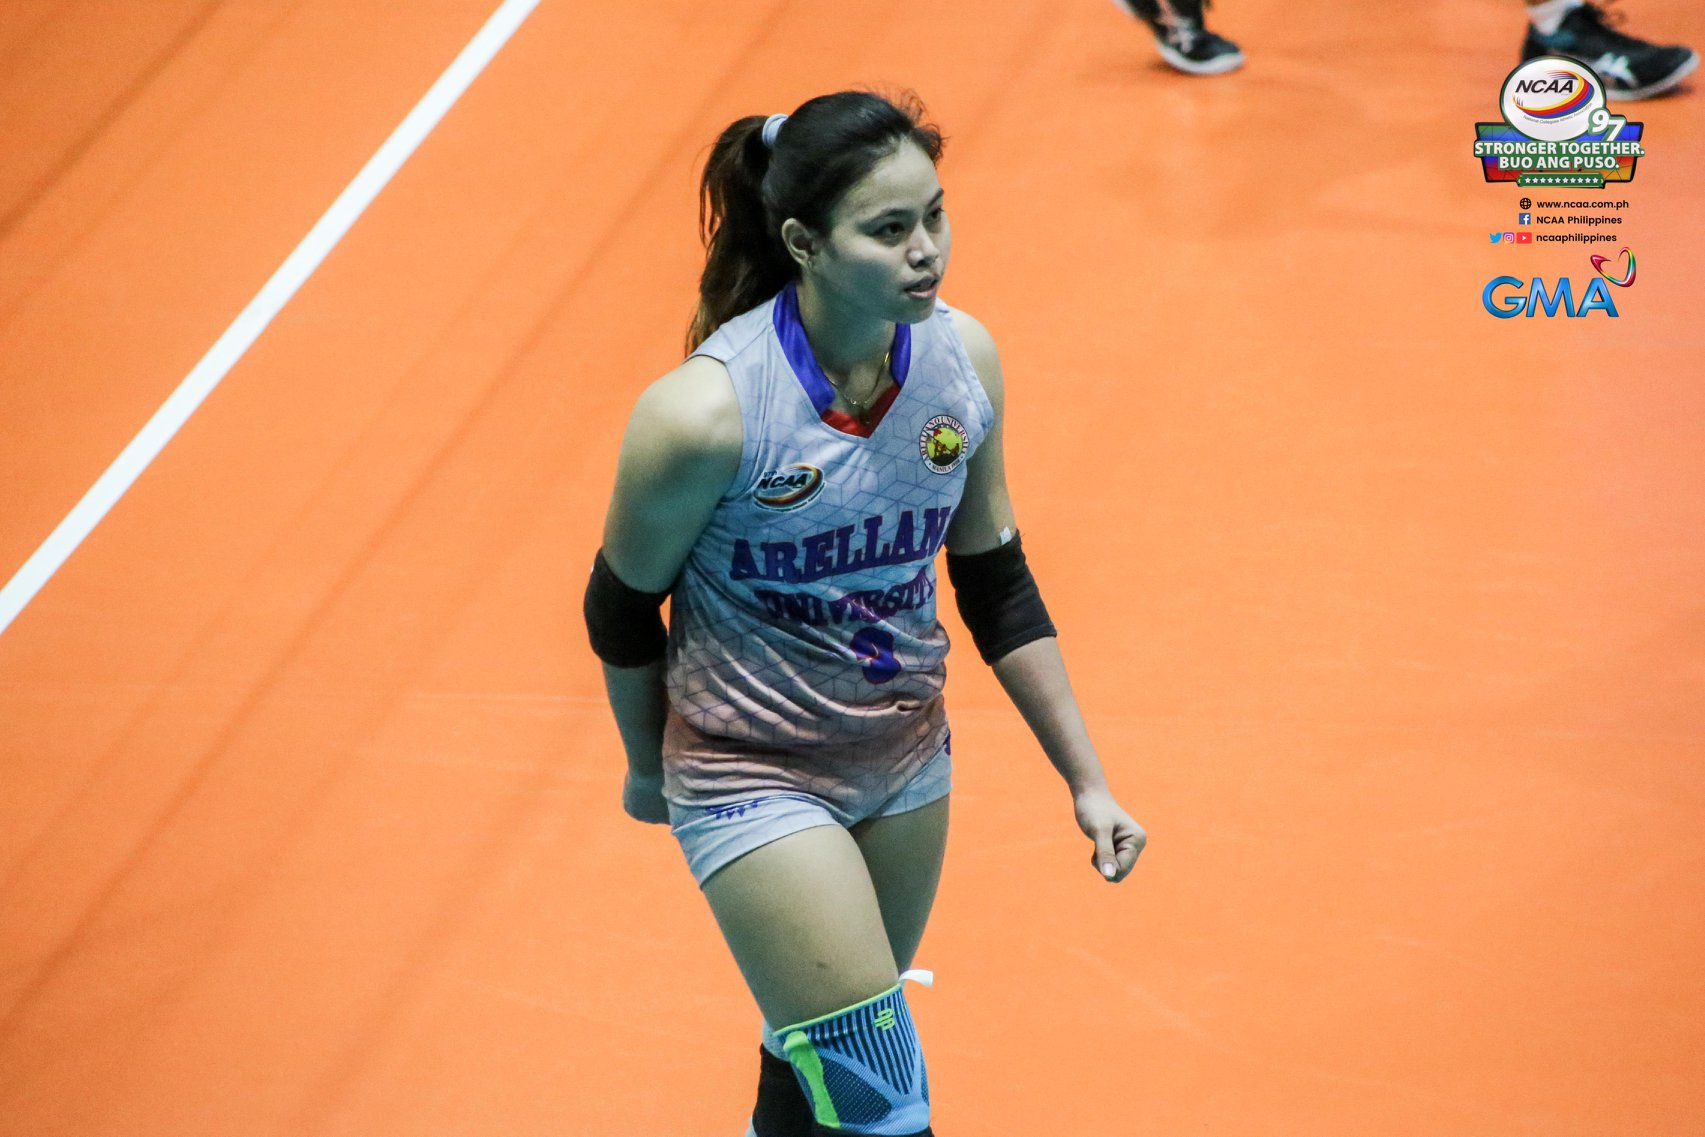 Princess Bello Arellano NCAA volleyball